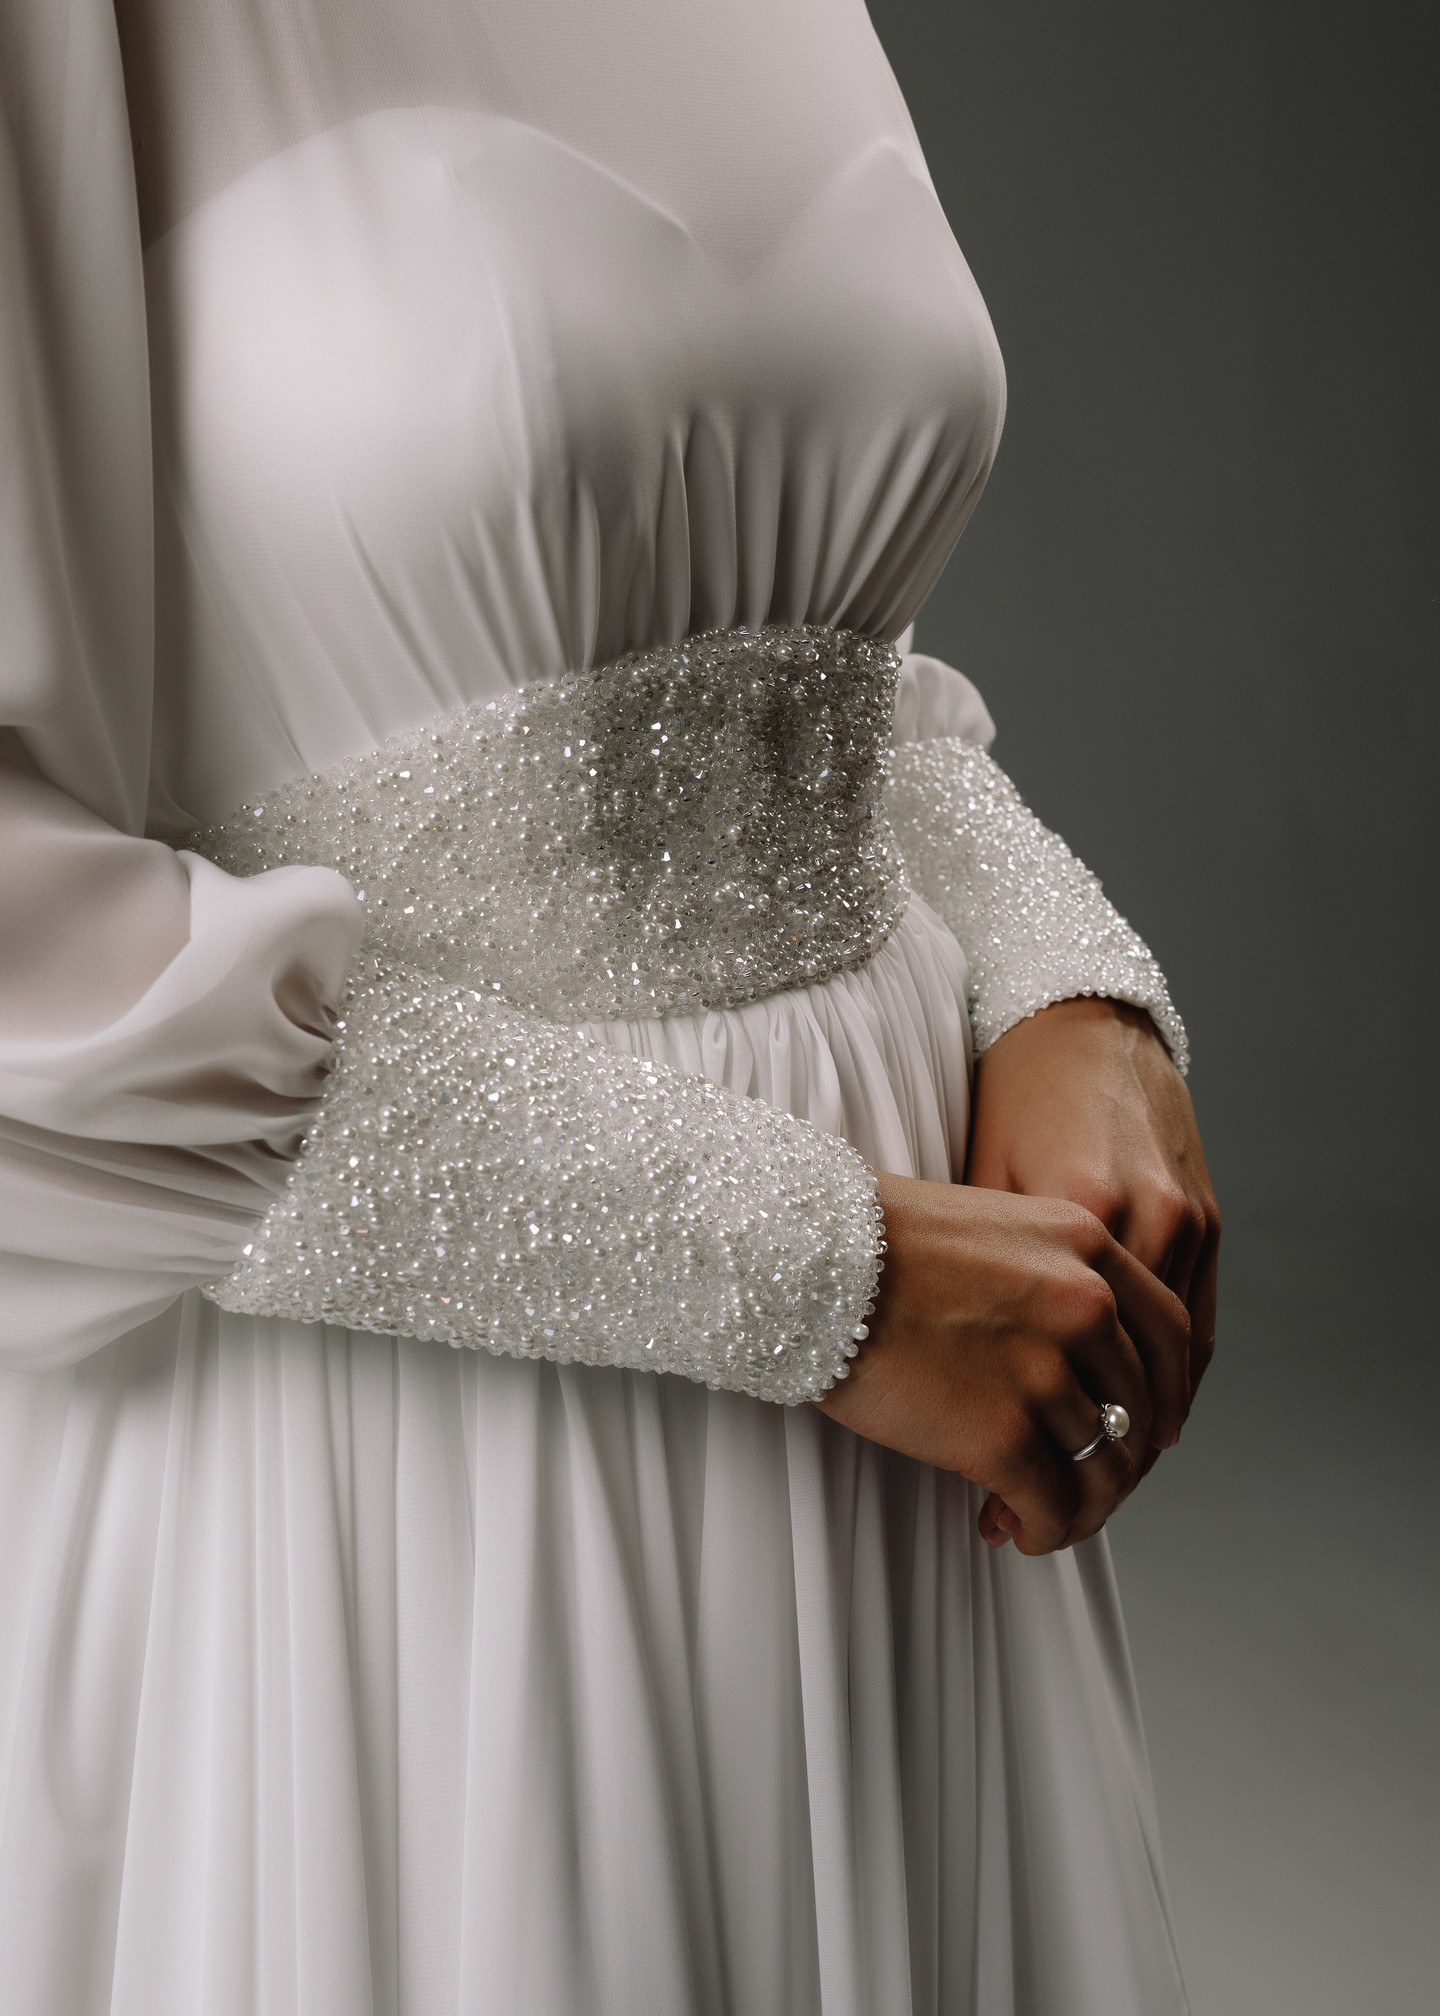 Платье Теона, 2020, одежда, платье, свадебное, молочно-белый, шифон, вышивка, рукава, А-силуэт, популярное